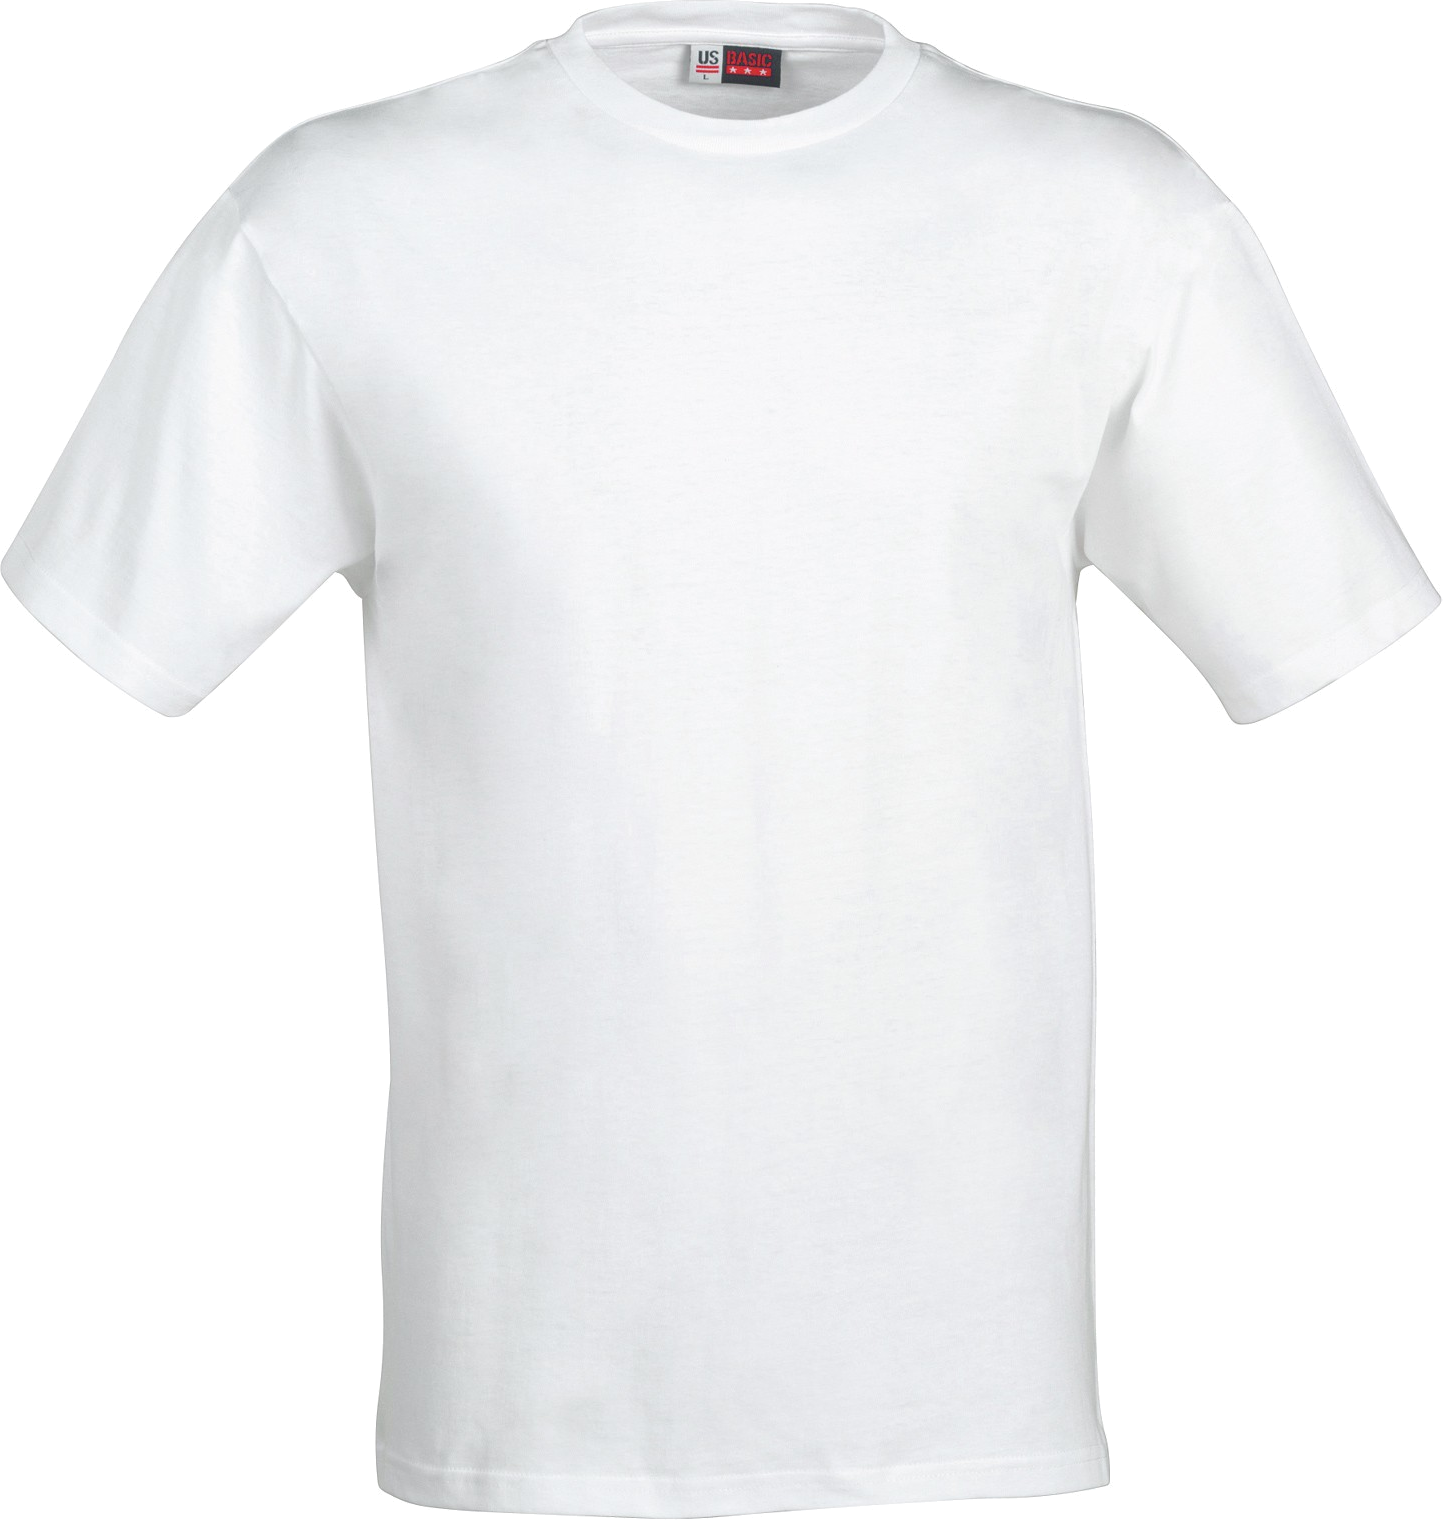 सफेद टीशर्ट